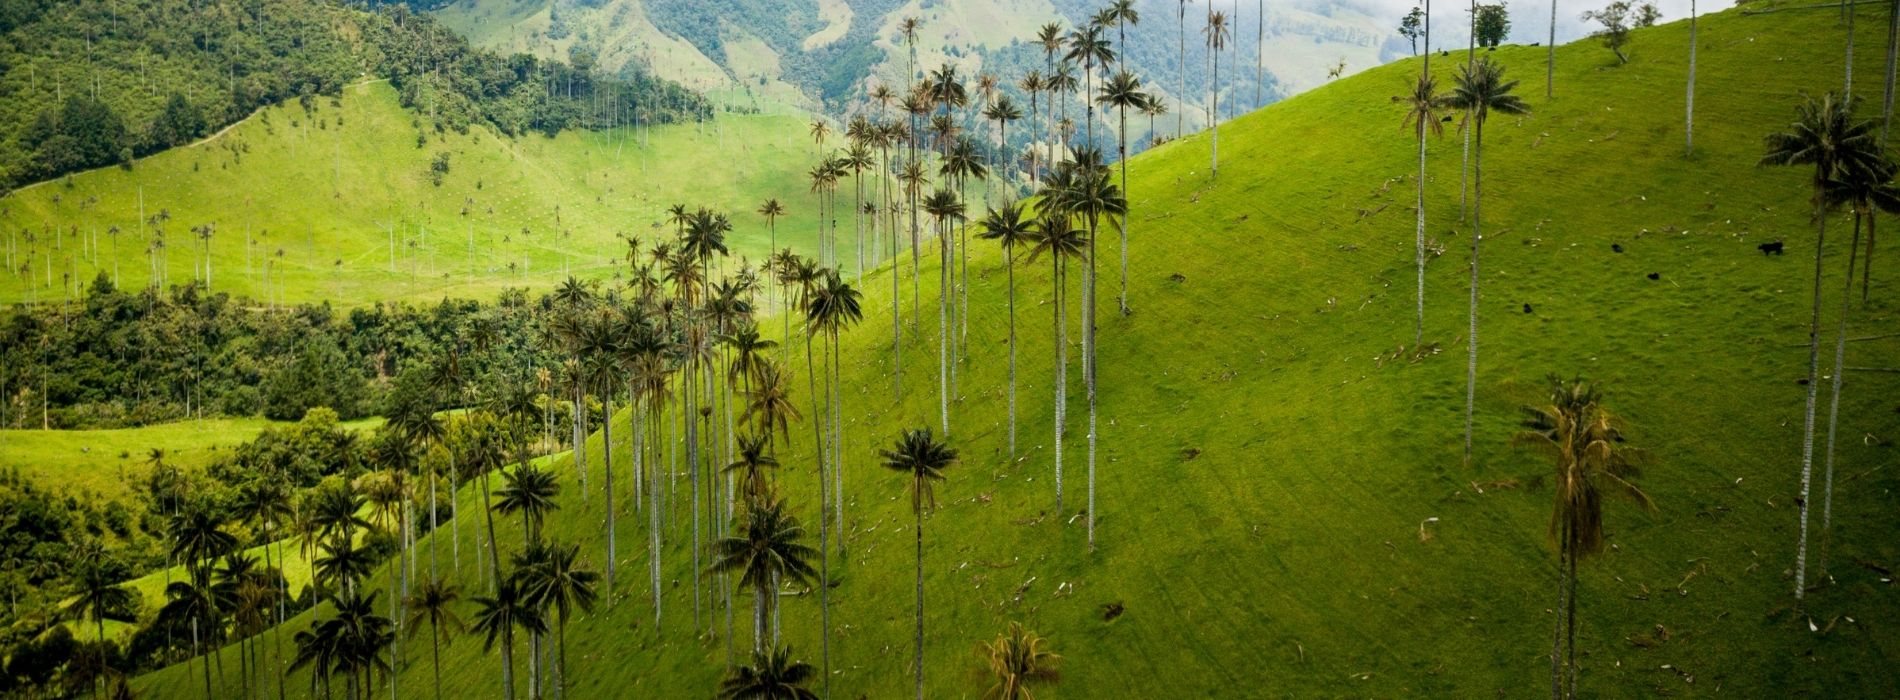 Fotografía panorámica de paisaje en Colombia